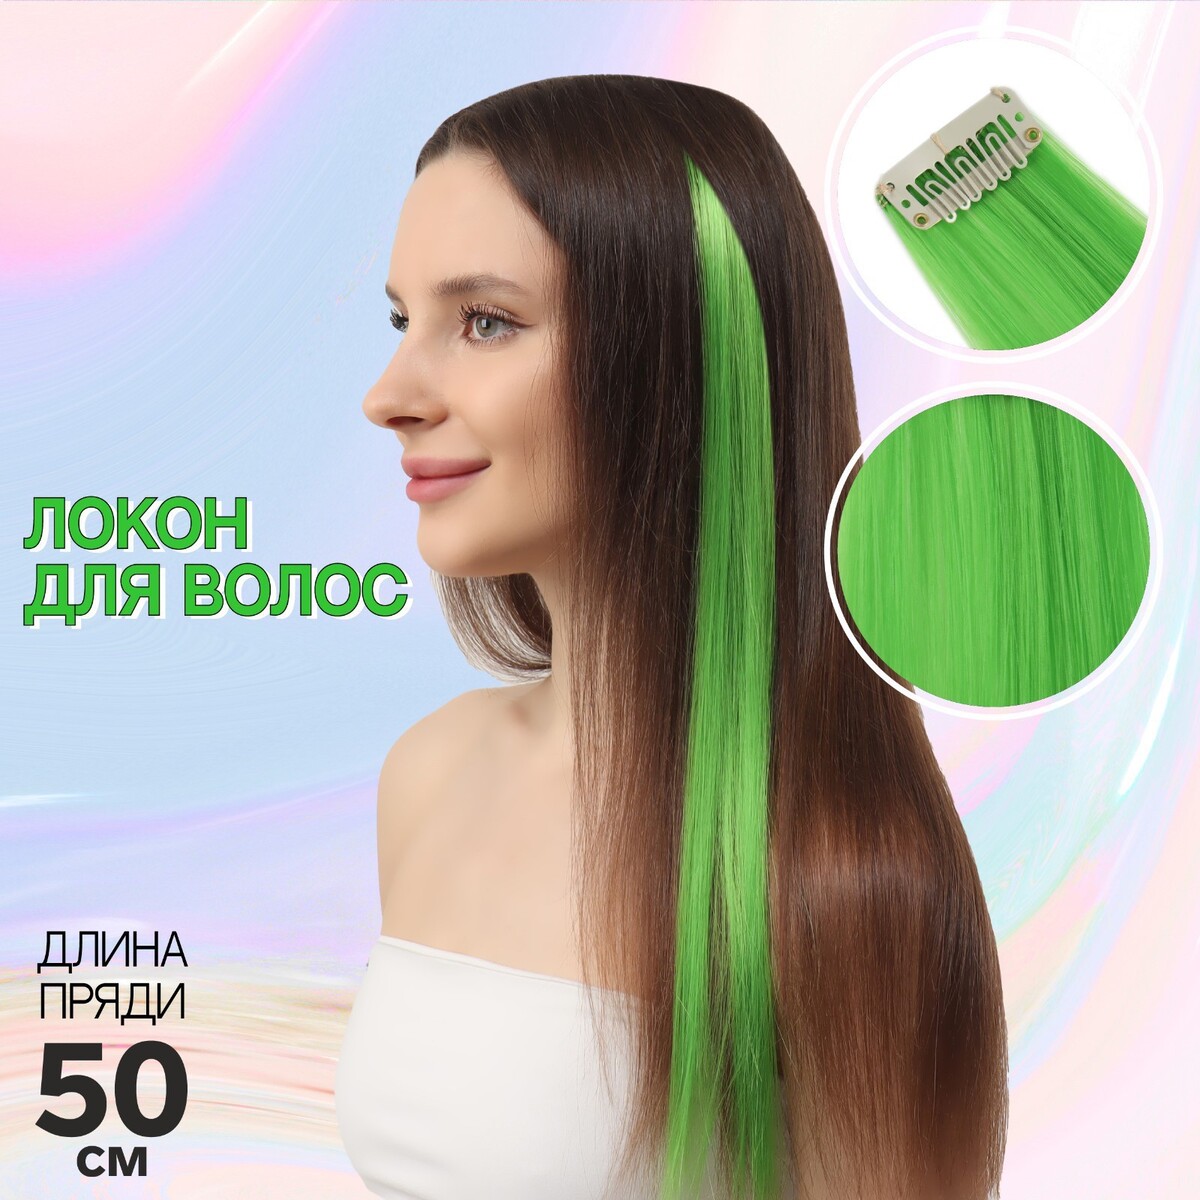 Локон накладной, прямой волос, на заколке, 50 см, 5 гр, цвет зеленый